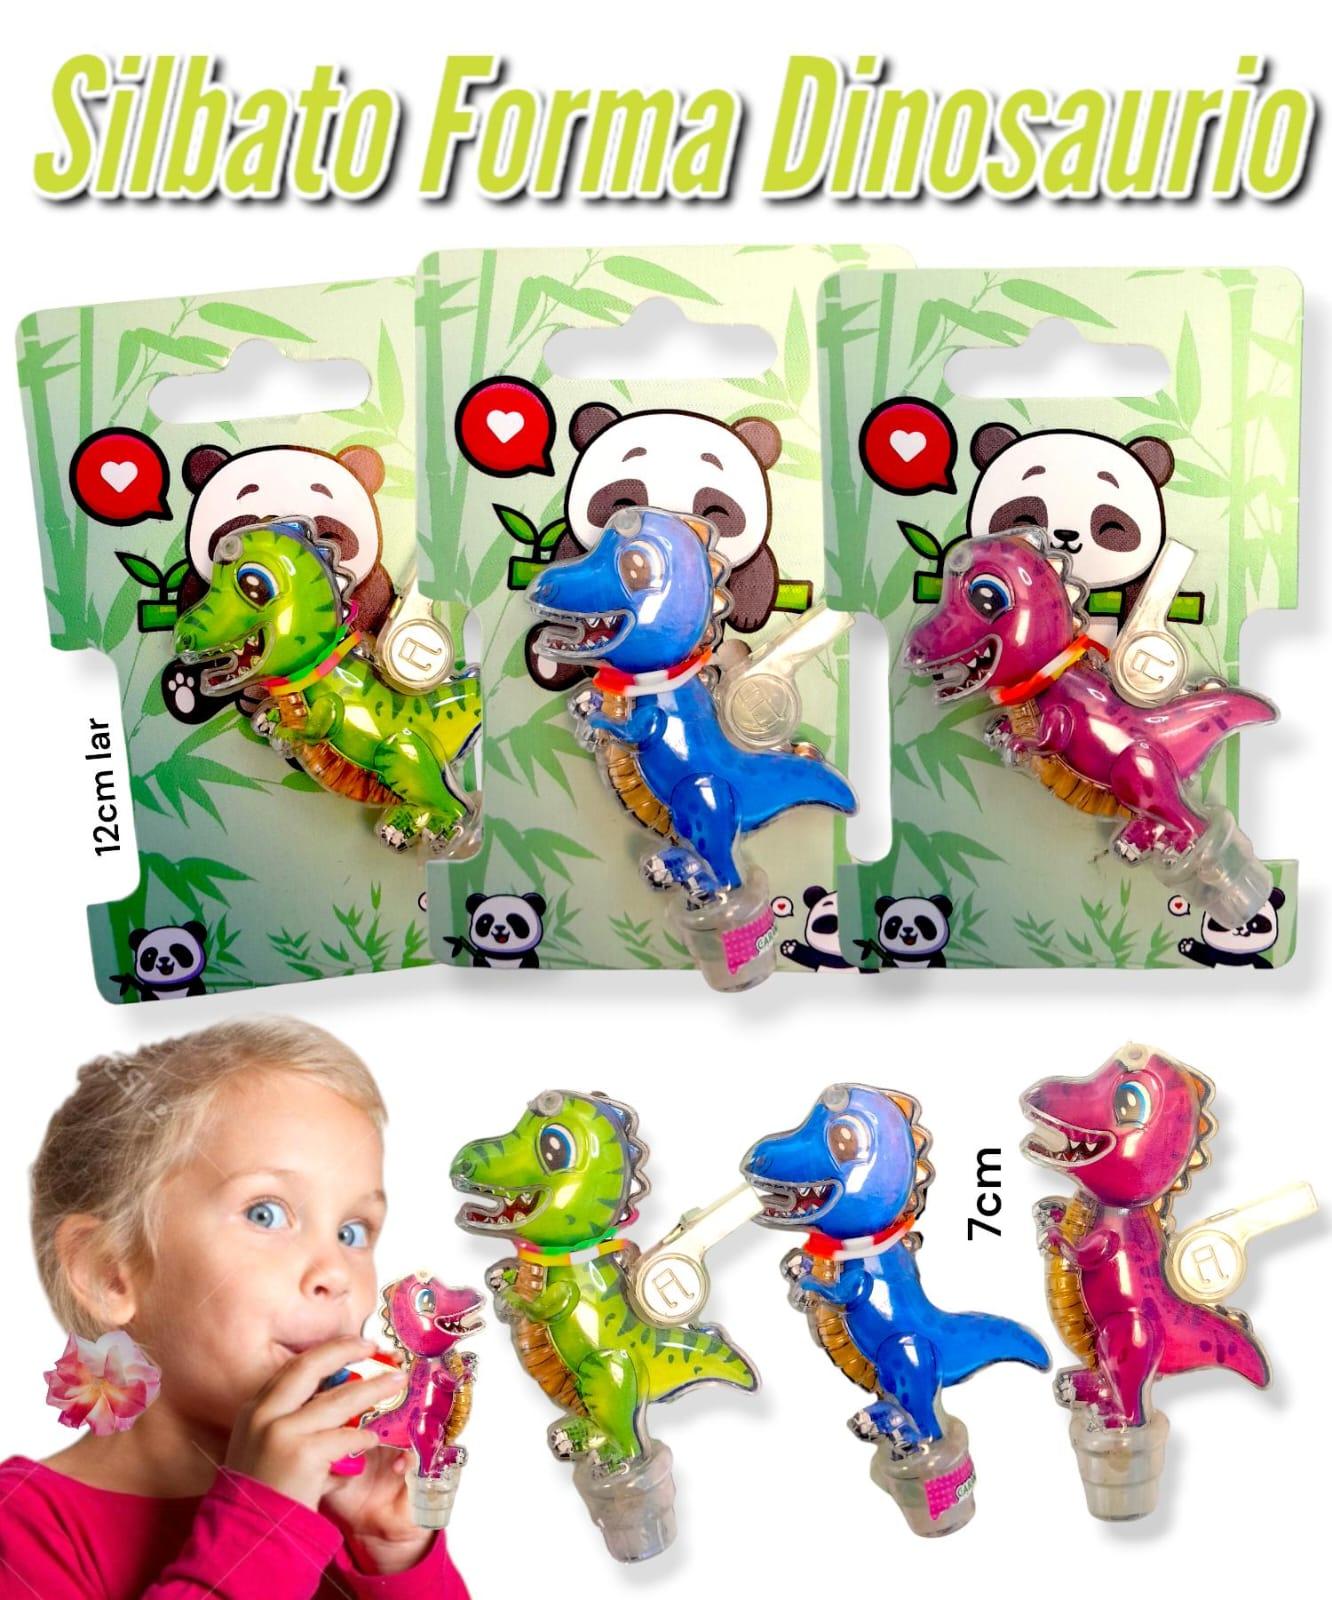 Silbato Forma Dinosaurio Con Exhibidor de Carton 